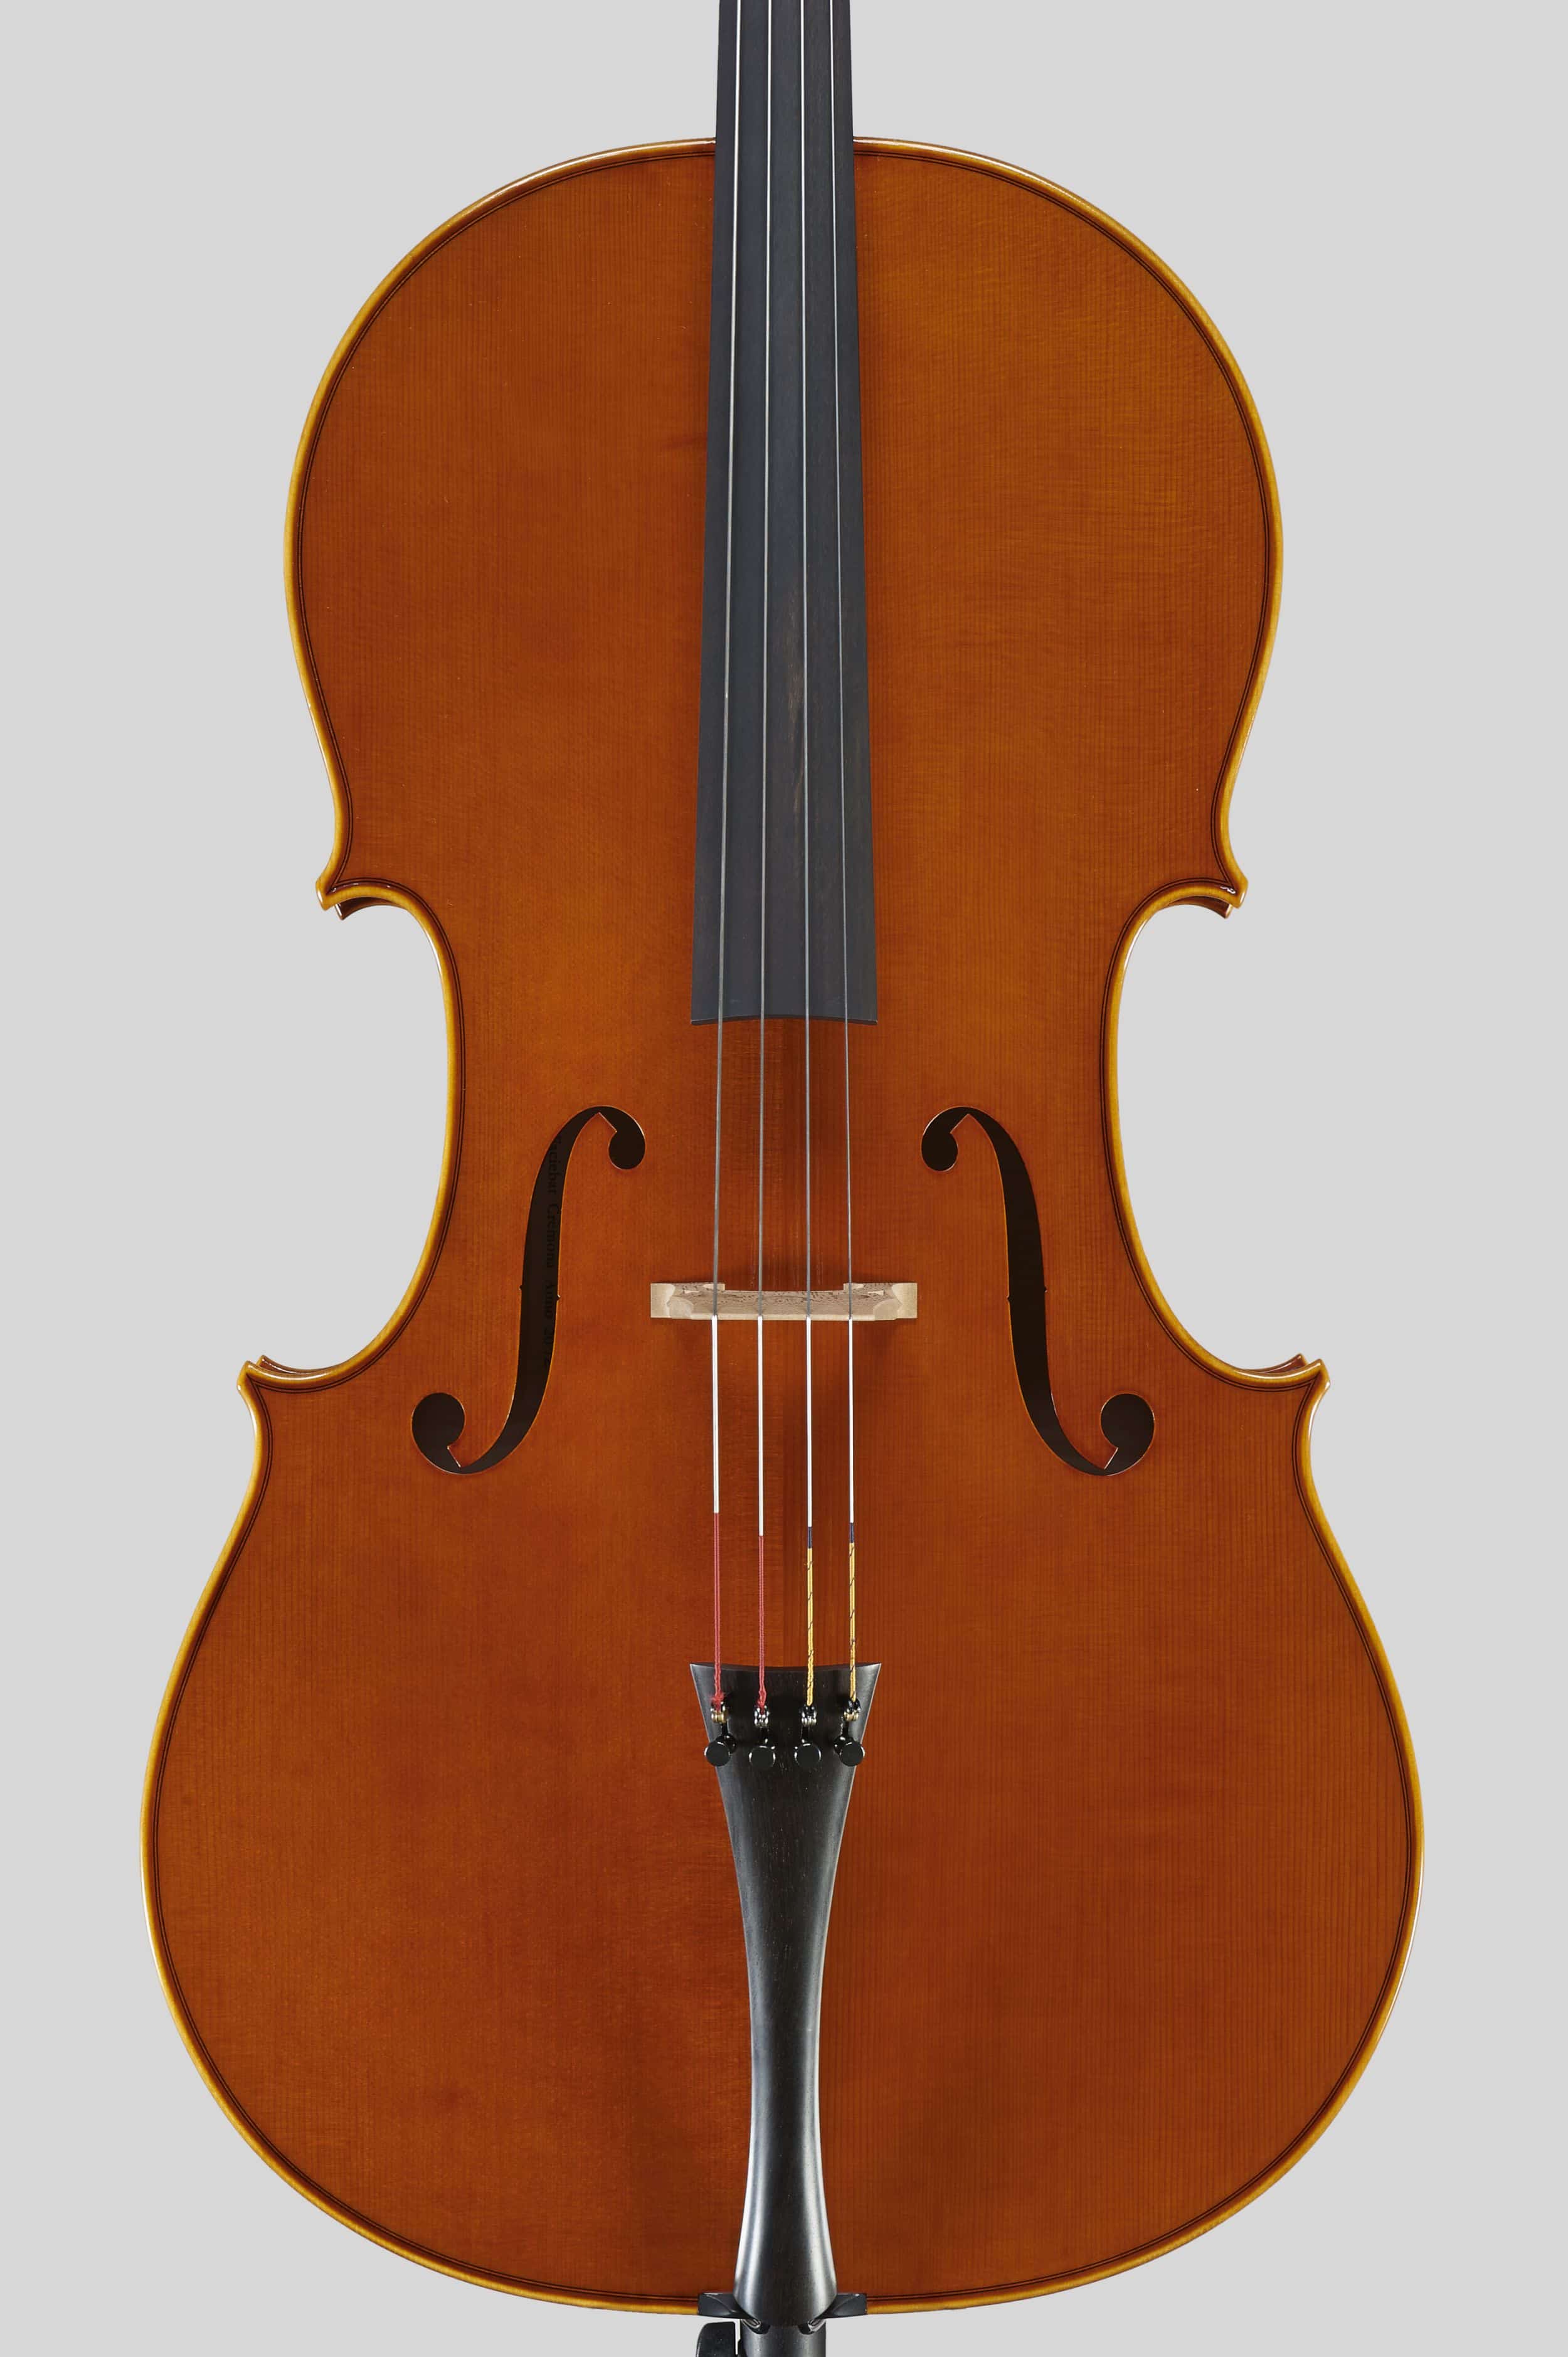 Anno 2012 – Violoncello modello stile A. Stradivari “forma B” - “Mara” 1711 - Tavola